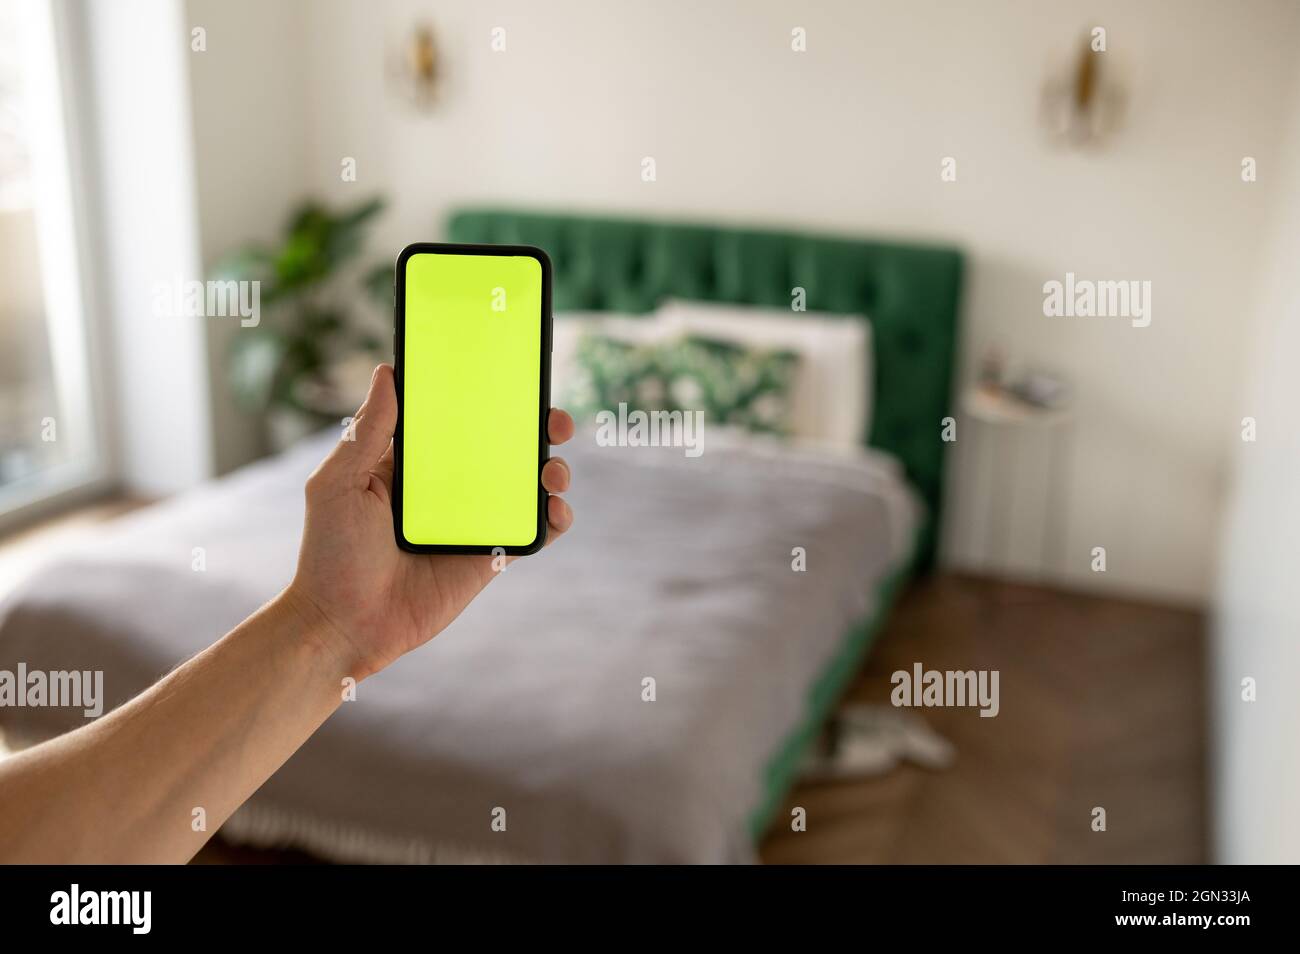 mantenga pulsada la tecla croma en la pantalla verde del smartphone para ver el contenido sin tocar ni deslizar el dedo. Foto de stock